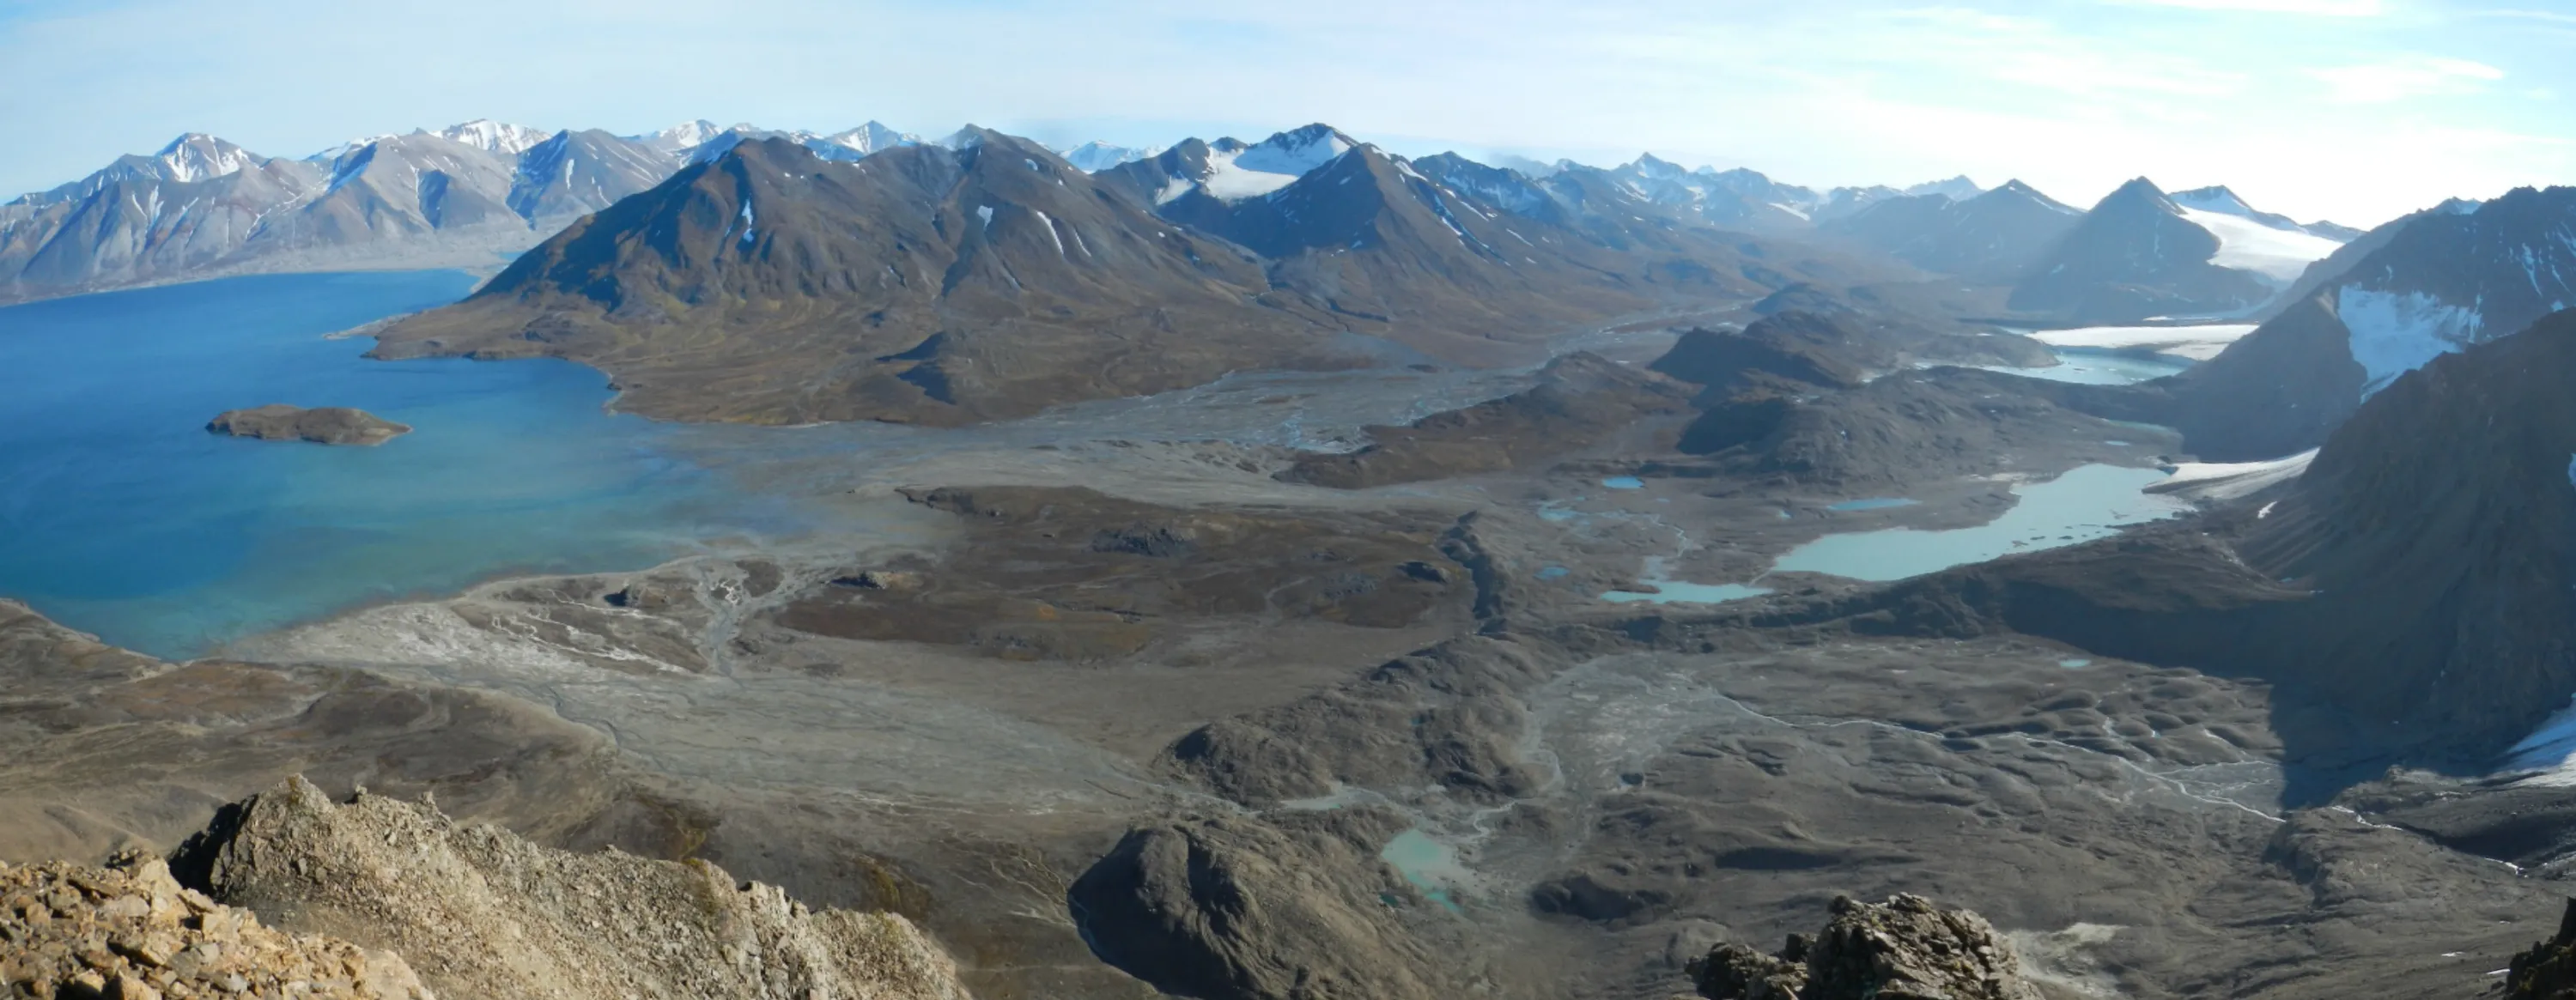 Wybrzeża arktyczne reagujące na zanikanie lodowców i tajanie wieloletniej zmarzliny - Bellsund Svalbard